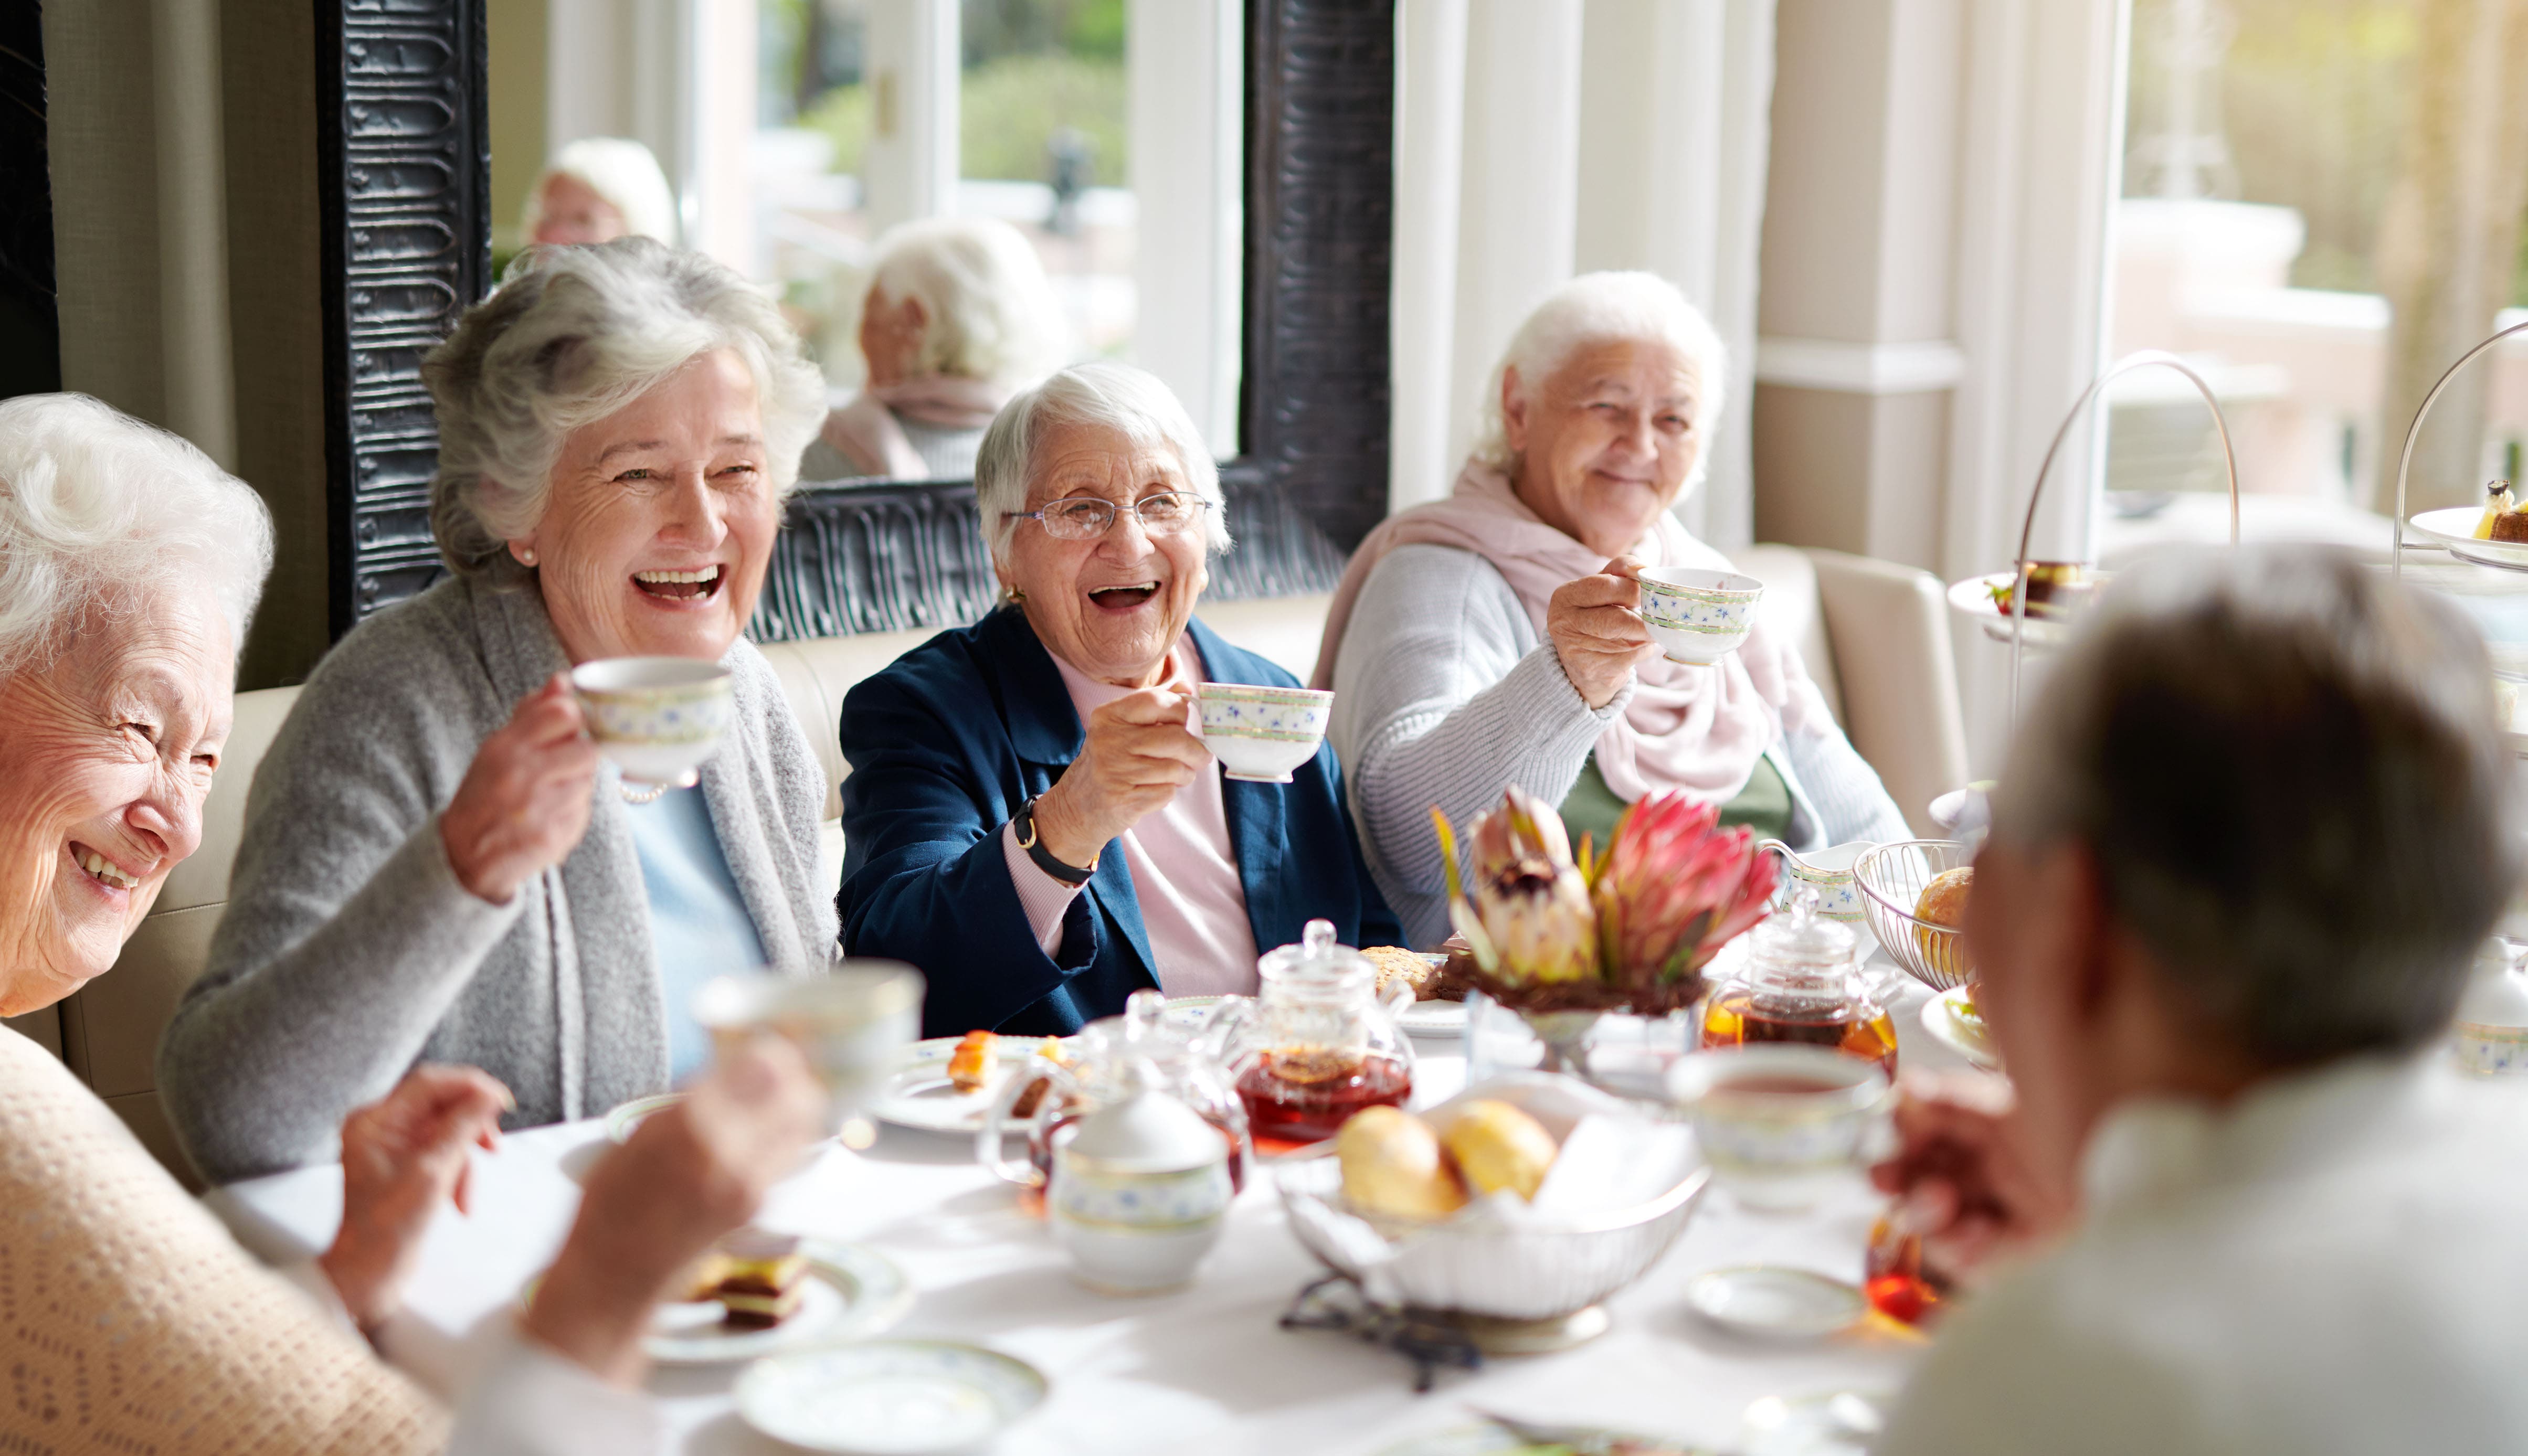 Organiser un repas convivial : un beau cadeau pour les parents âgés